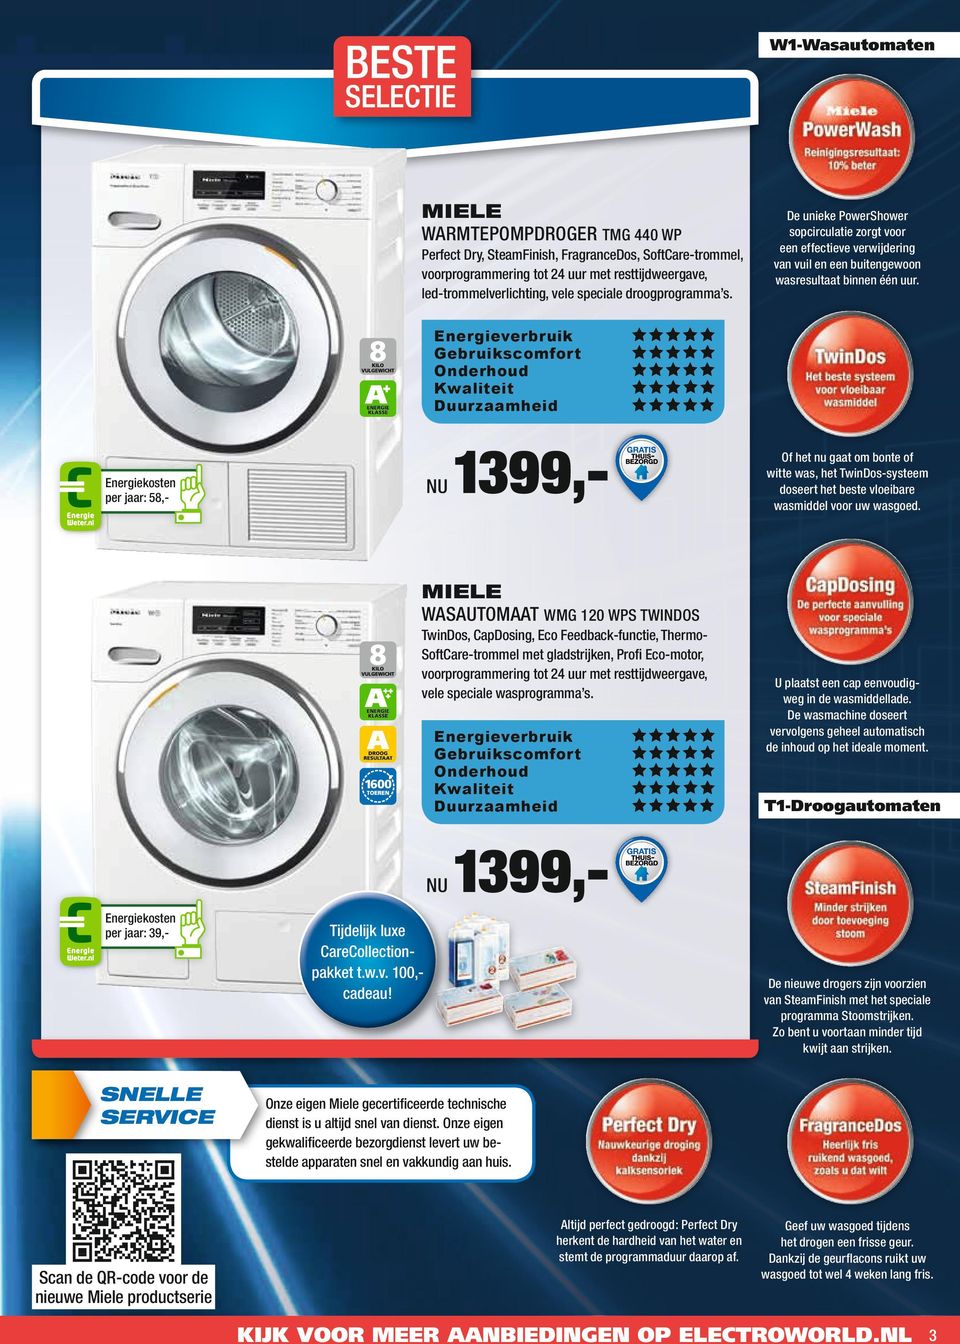 per jaar: 58,- 1399,- Of het nu gaat om bonte of witte was, het TwinDos-systeem doseert het beste vloeibare wasmiddel voor uw wasgoed.